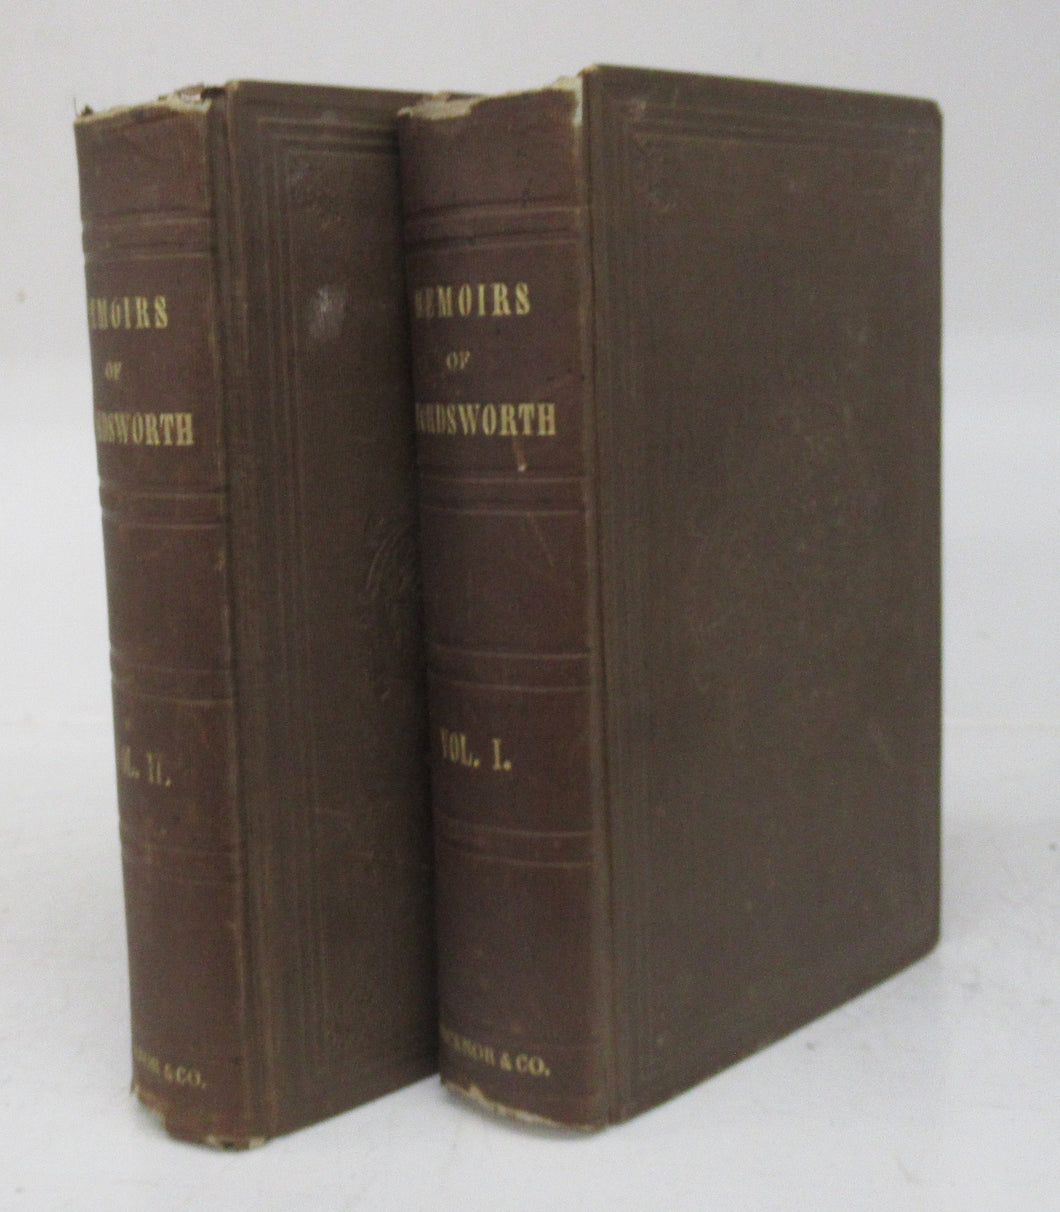 Memoirs of William Wordsworth Vols. I & II